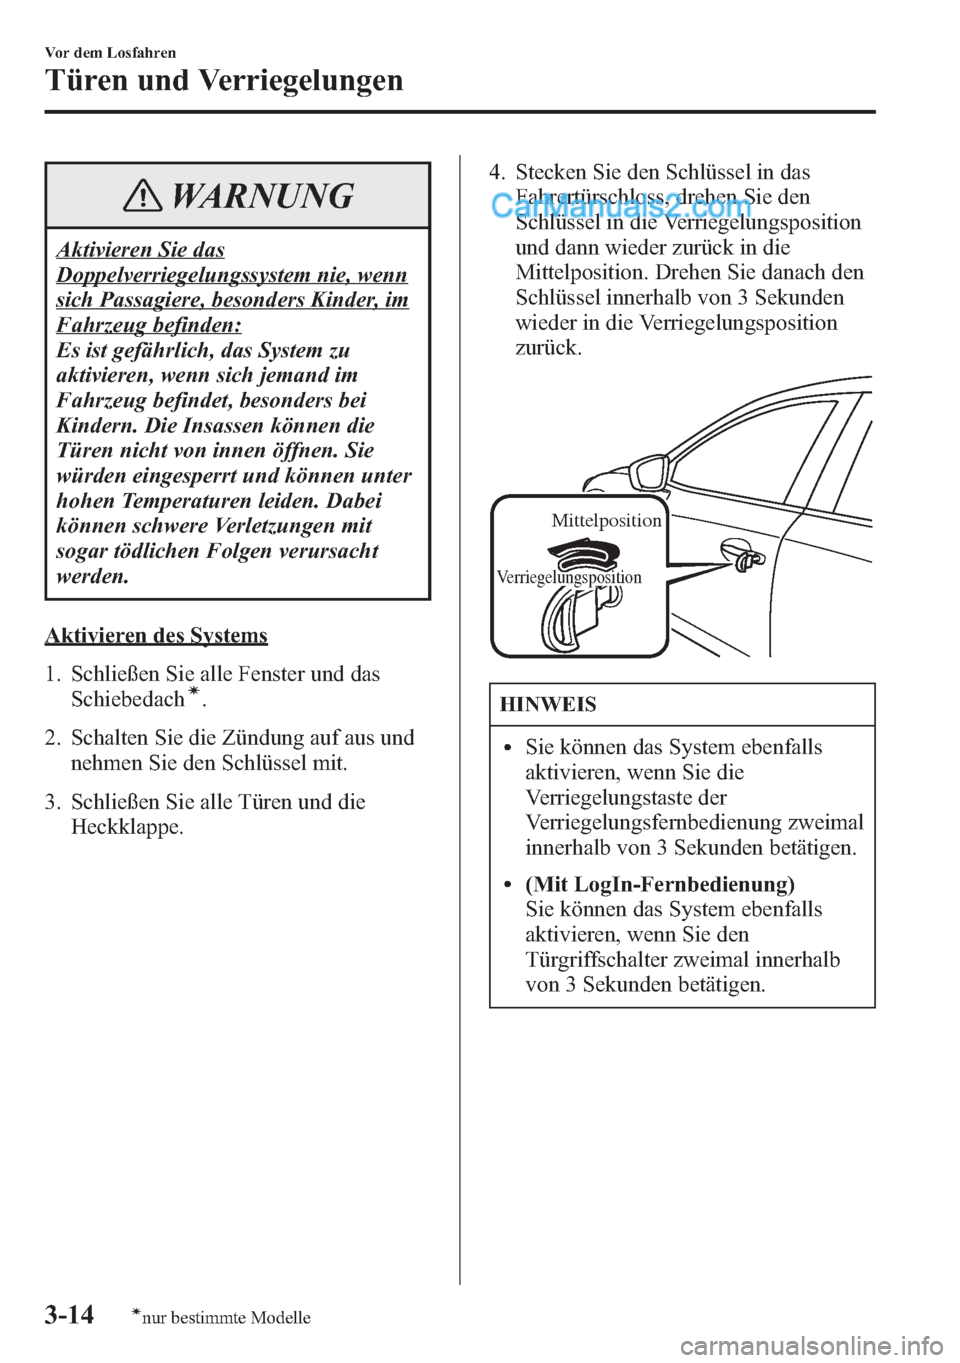 MAZDA MODEL CX-5 2015  Betriebsanleitung (in German) WARNUNG
Aktivieren Sie das
Doppelverriegelungssystem nie, wenn
sich Passagiere, besonders Kinder, im
Fahrzeug befinden:
Es ist gefährlich, das System zu
aktivieren, wenn sich jemand im
Fahrzeug befin